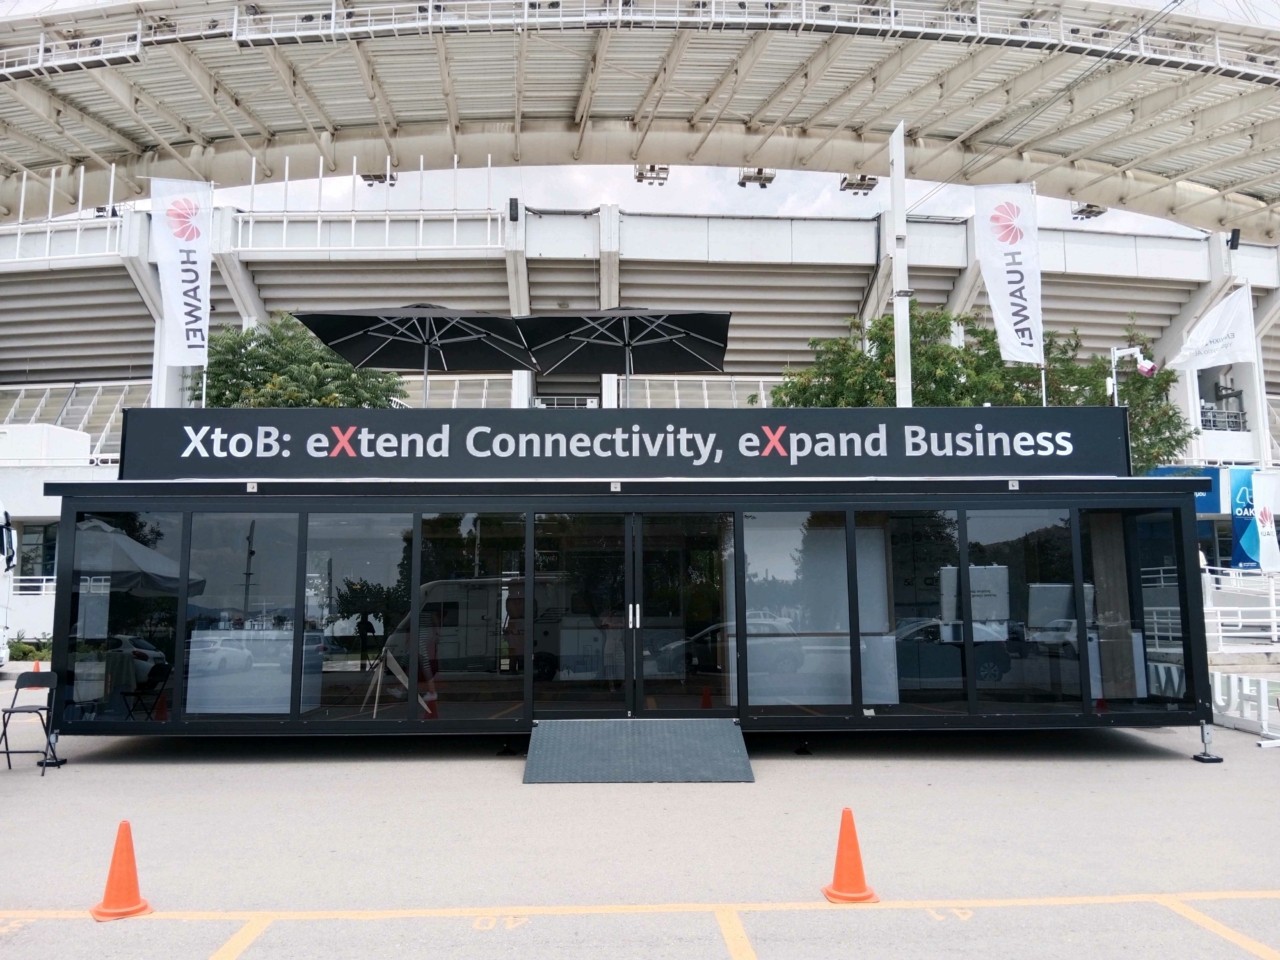 Ad Atene è stato presentato anche l’XtoB Roadshow “eXtend Connectivity, eXpand Business” 2023 di Huawei (foto)